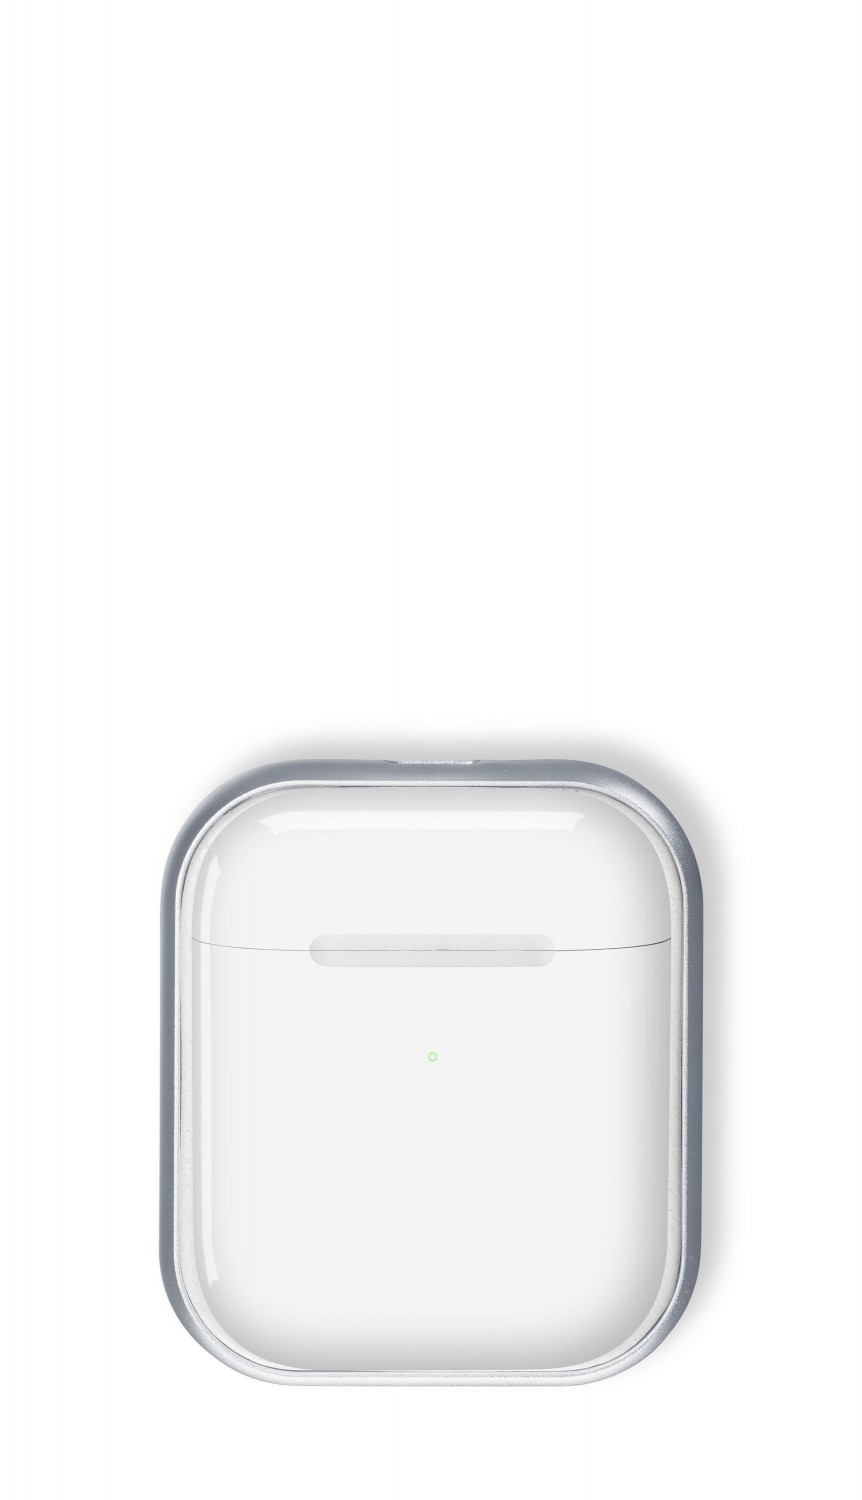 Bezdrátová nabíječka Cellularline Power Base pro Apple Airpods/Airpods Pro bílá